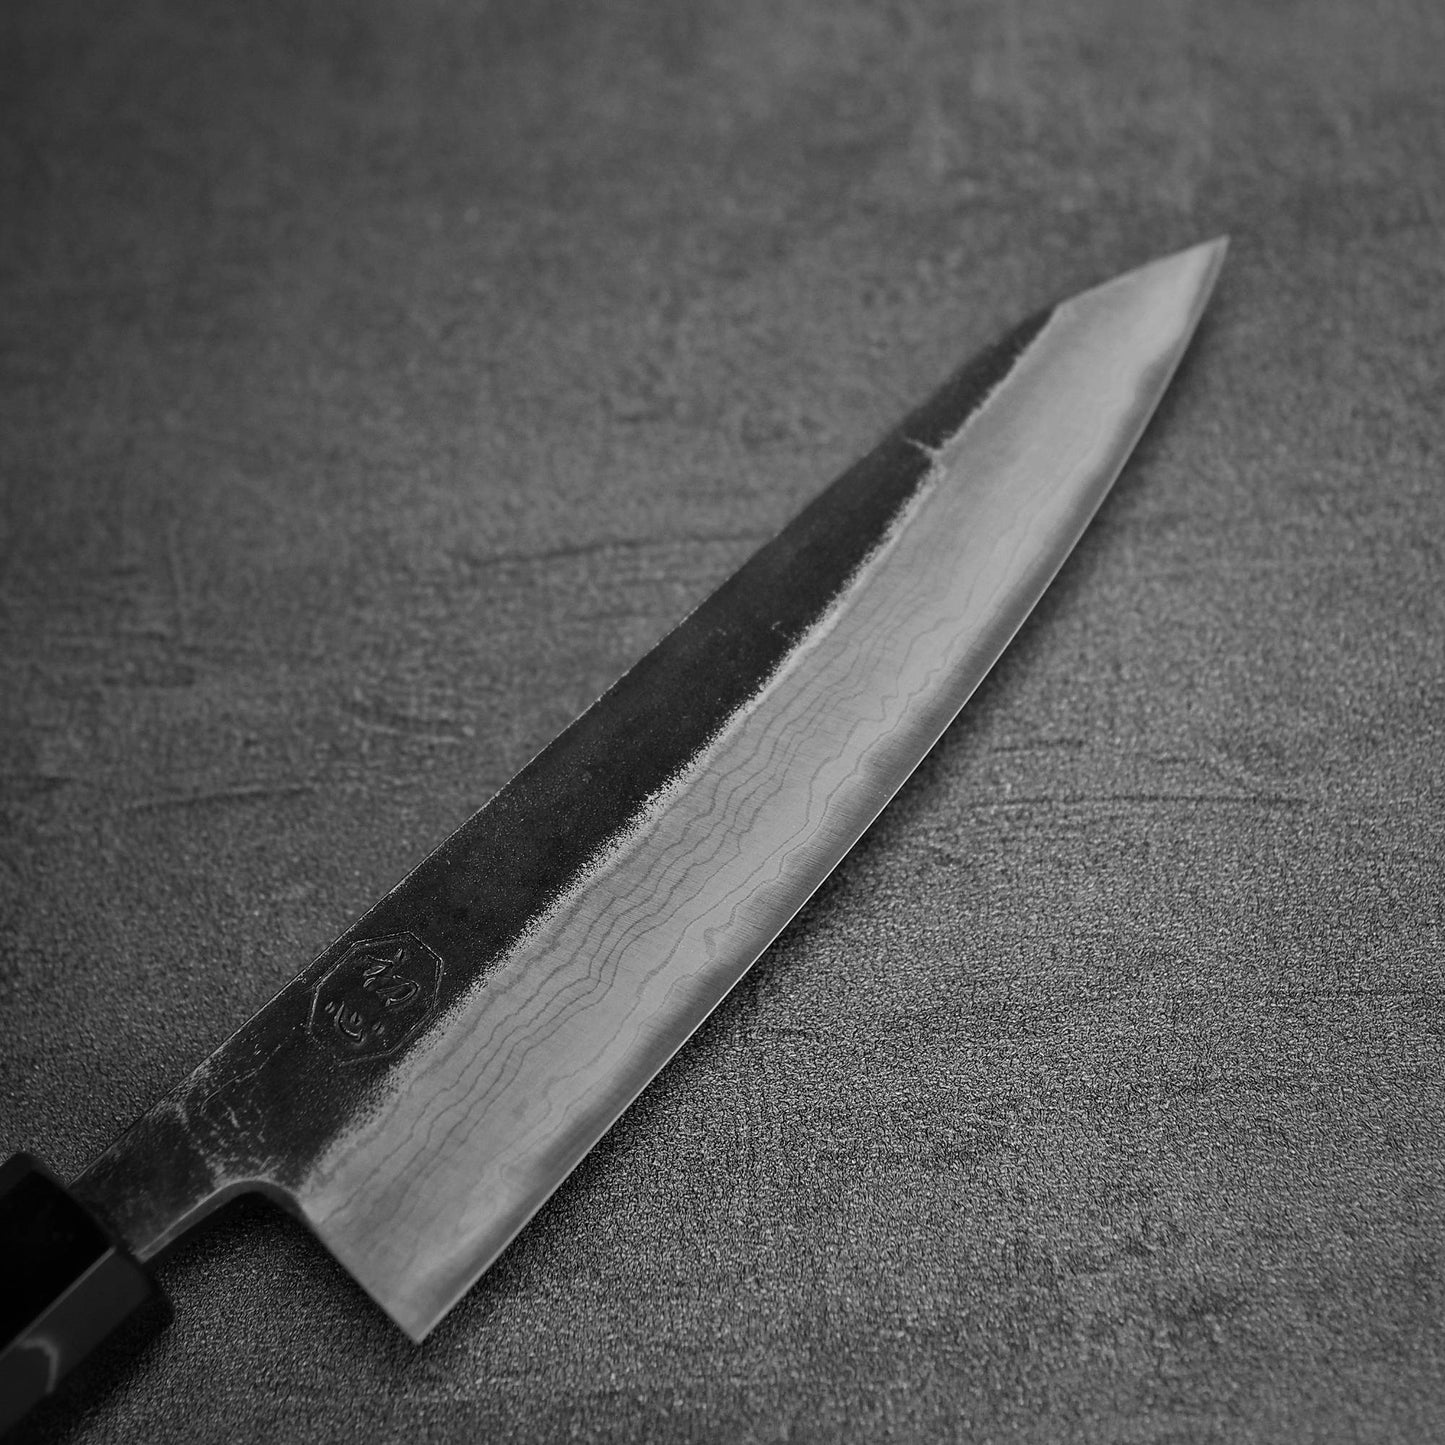 Close up view of the blade of Hatsukokoro Kumokage kurouchi damascus aogami#2 honesuki knife